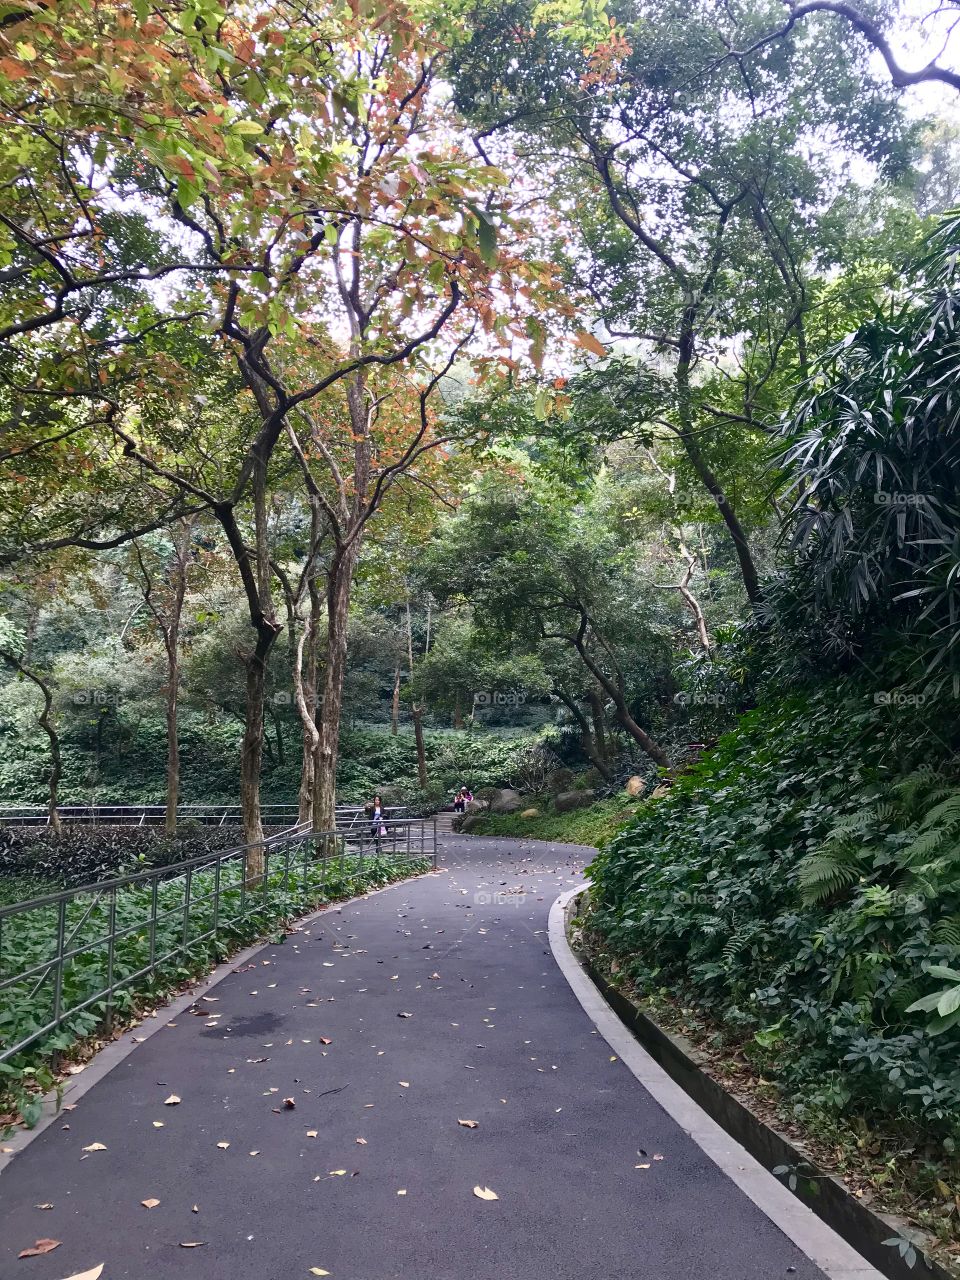 Path through lush gardens